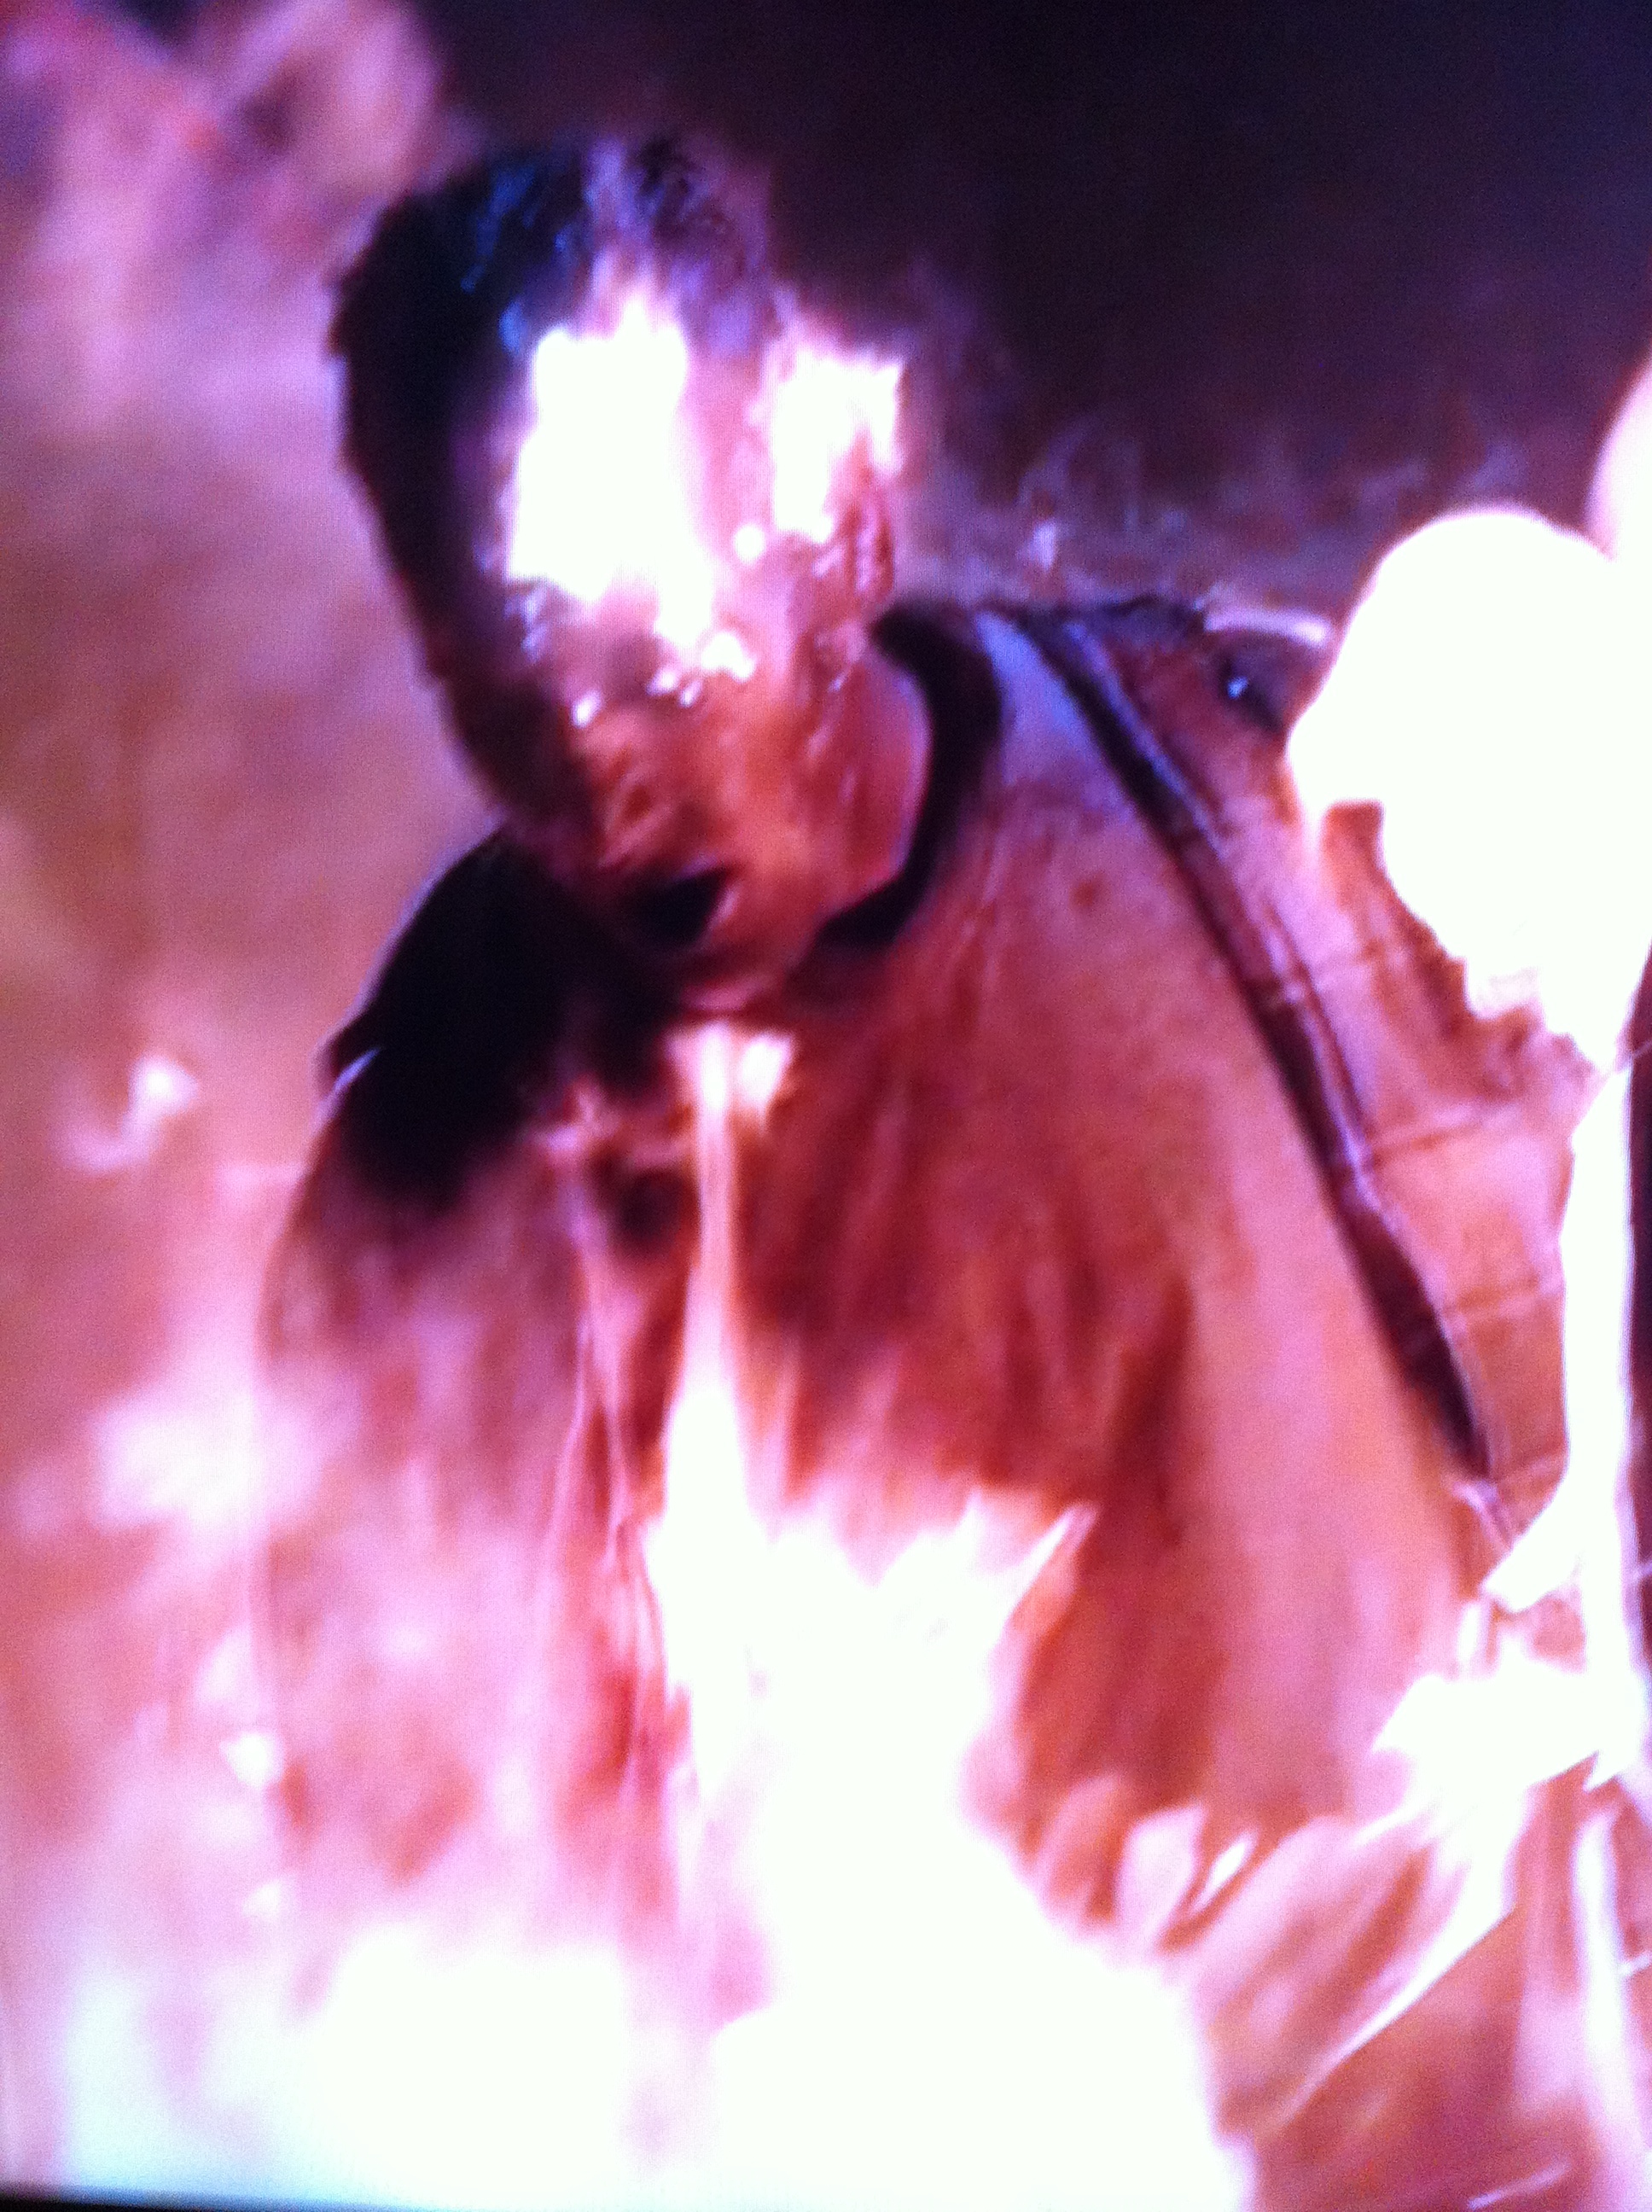 Fire Stunt screen capture from Season 3 of The Walking Dead